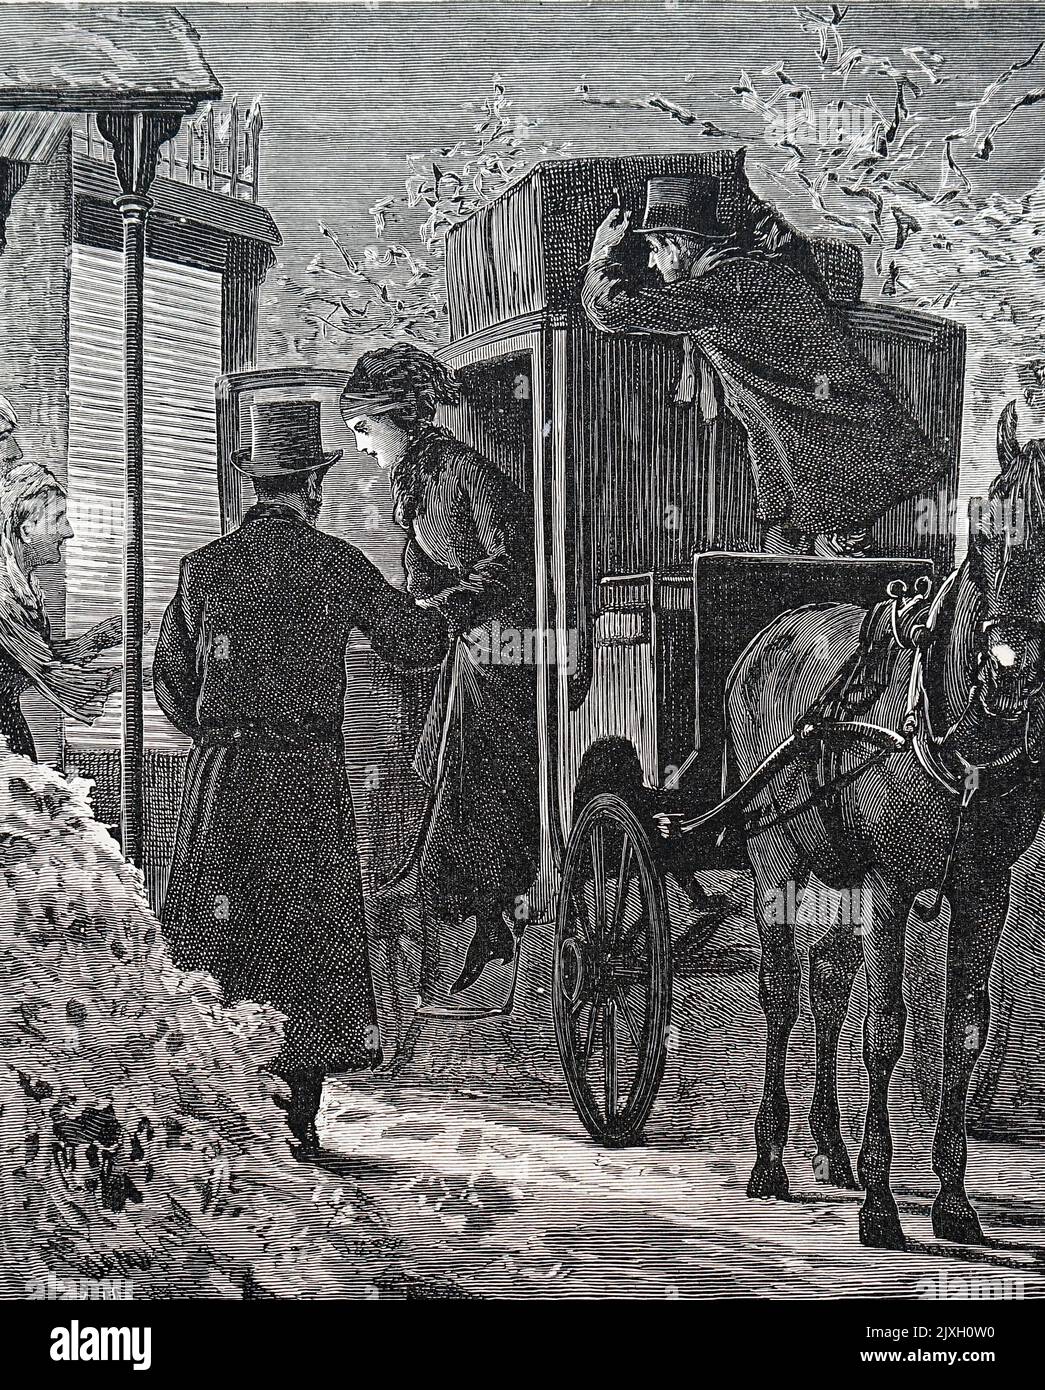 Illustration représentant une femme émergeant d'une calèche lorsqu'elle se rend à la maison pour Noël. Daté du 19th siècle Banque D'Images